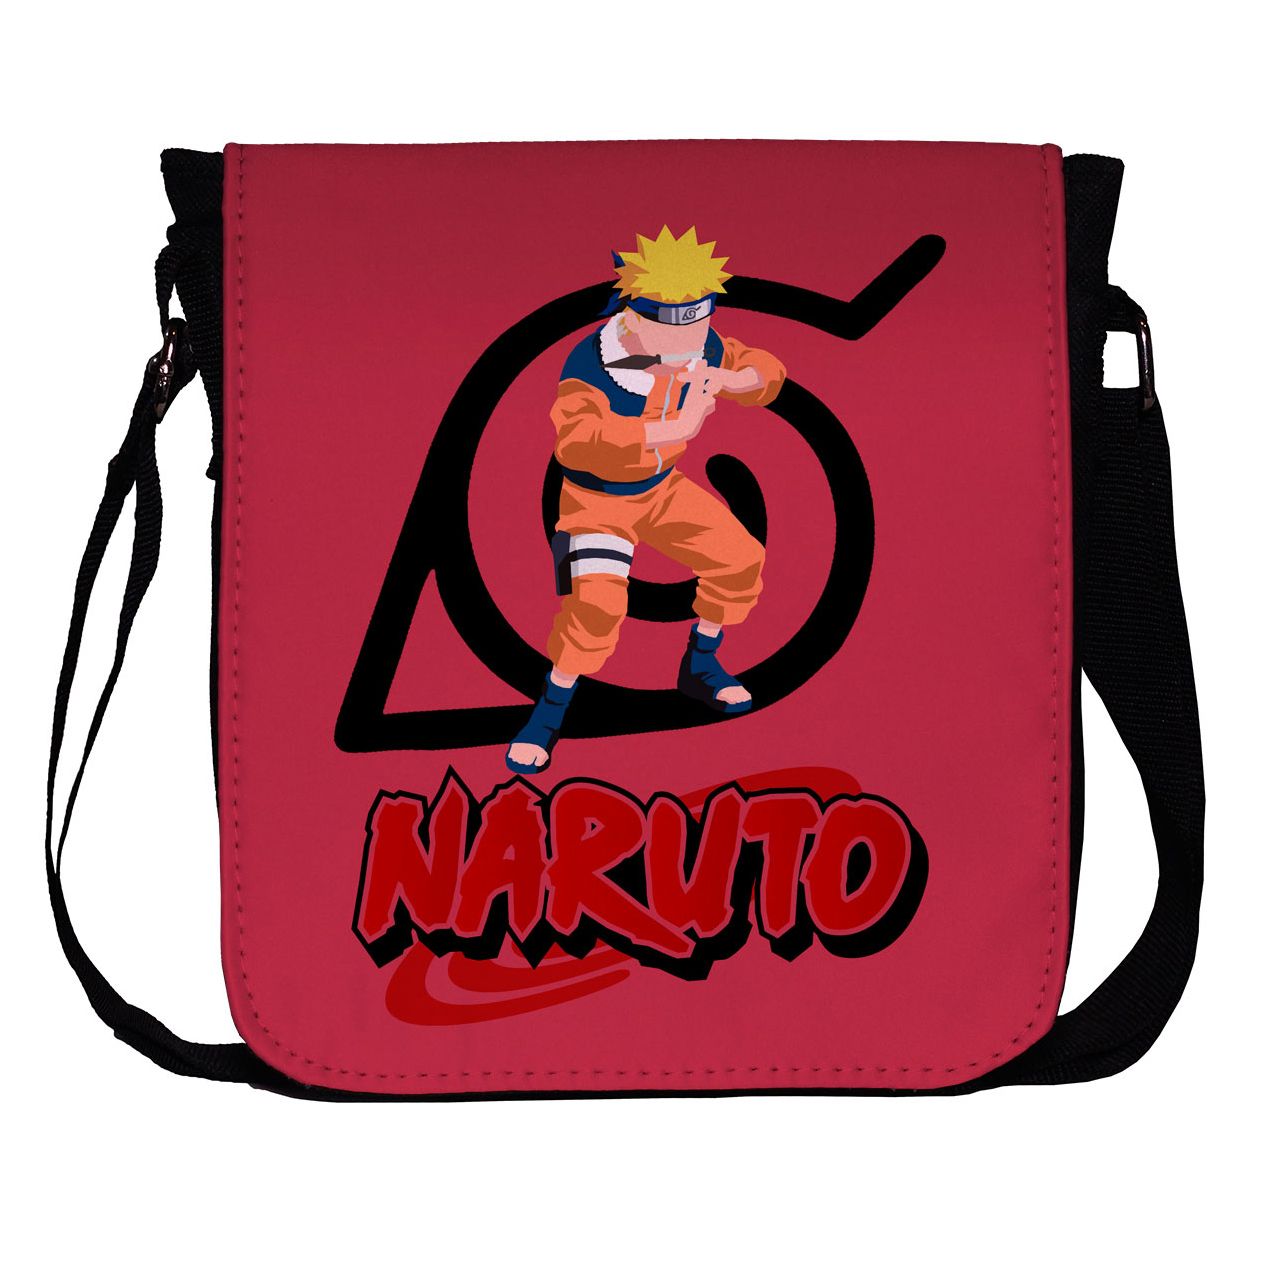 کیف دوشی پسرانه طرح Naruto کد 1007 -  - 1